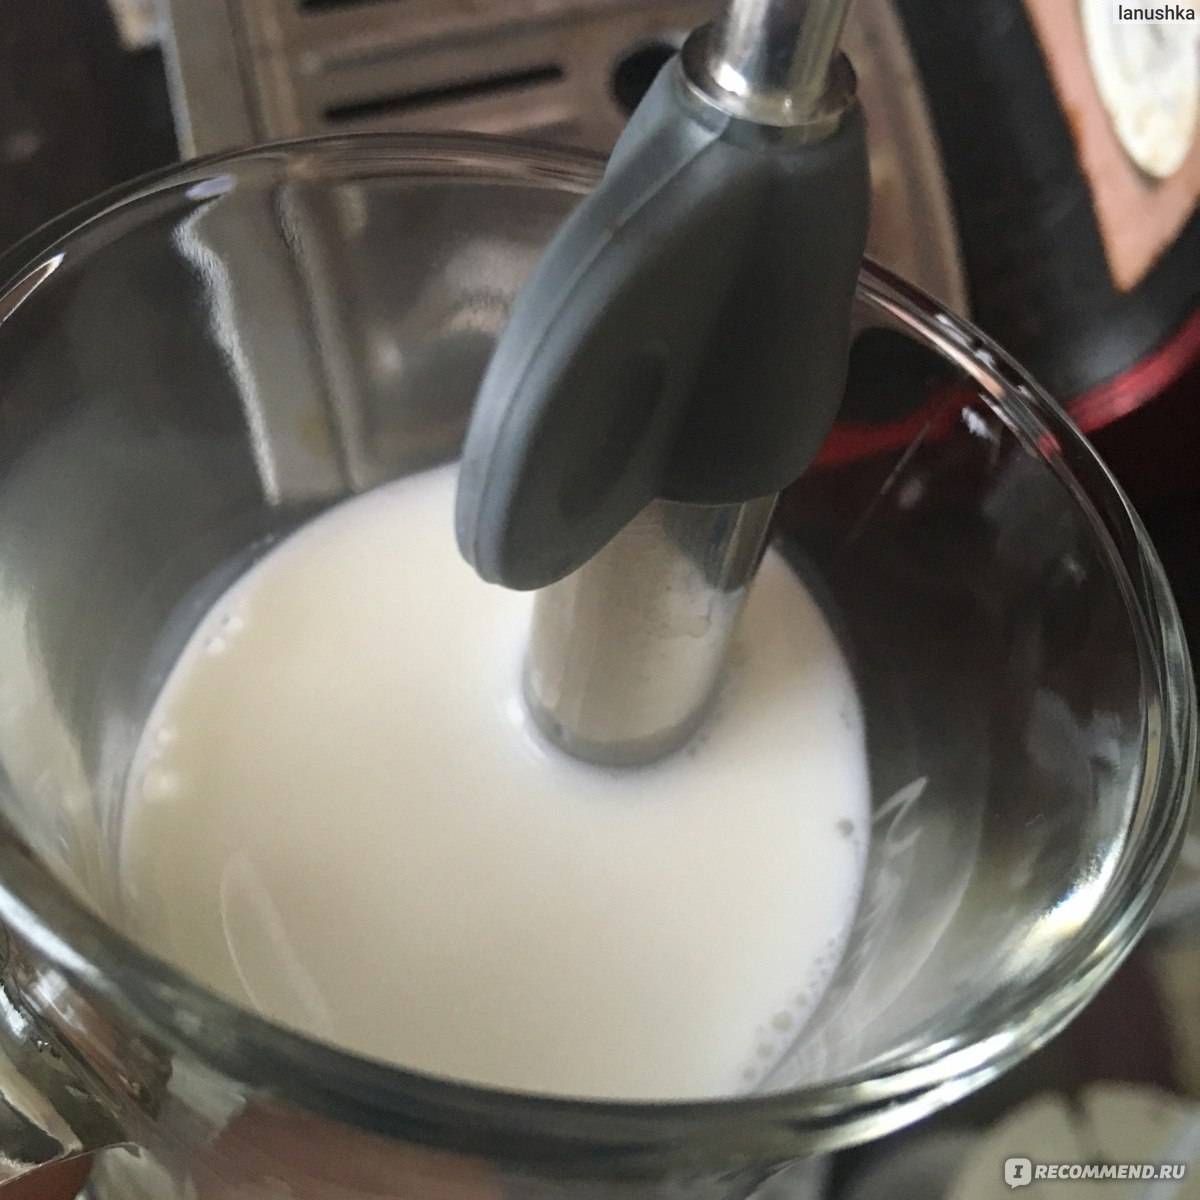 Какое молоко лучше использовать для капучино в кофемашине